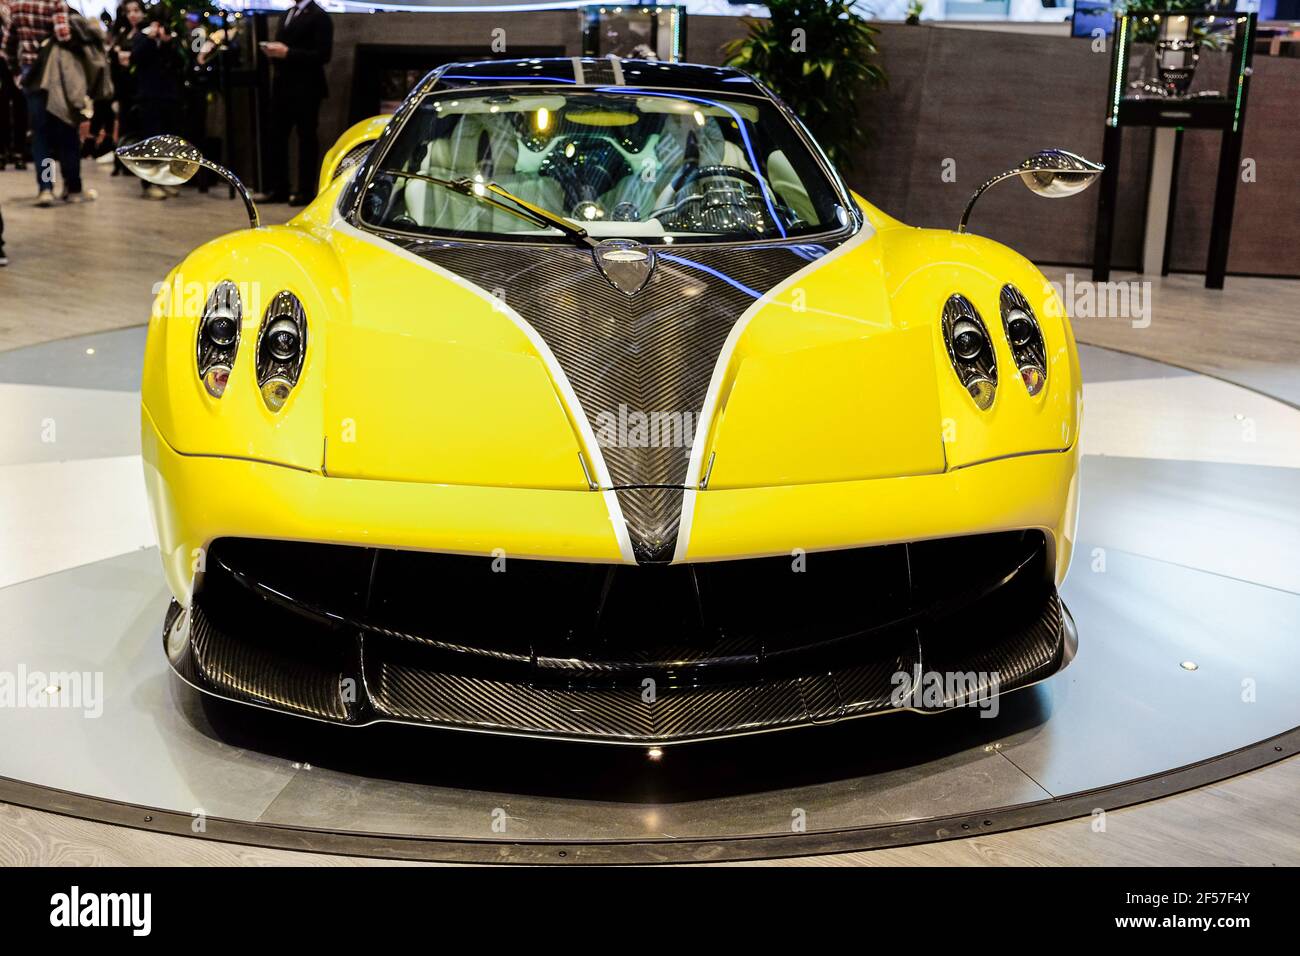 Édition jaune limitée Pagani Huayra voiture de course italienne sur international salon de la voiture Banque D'Images